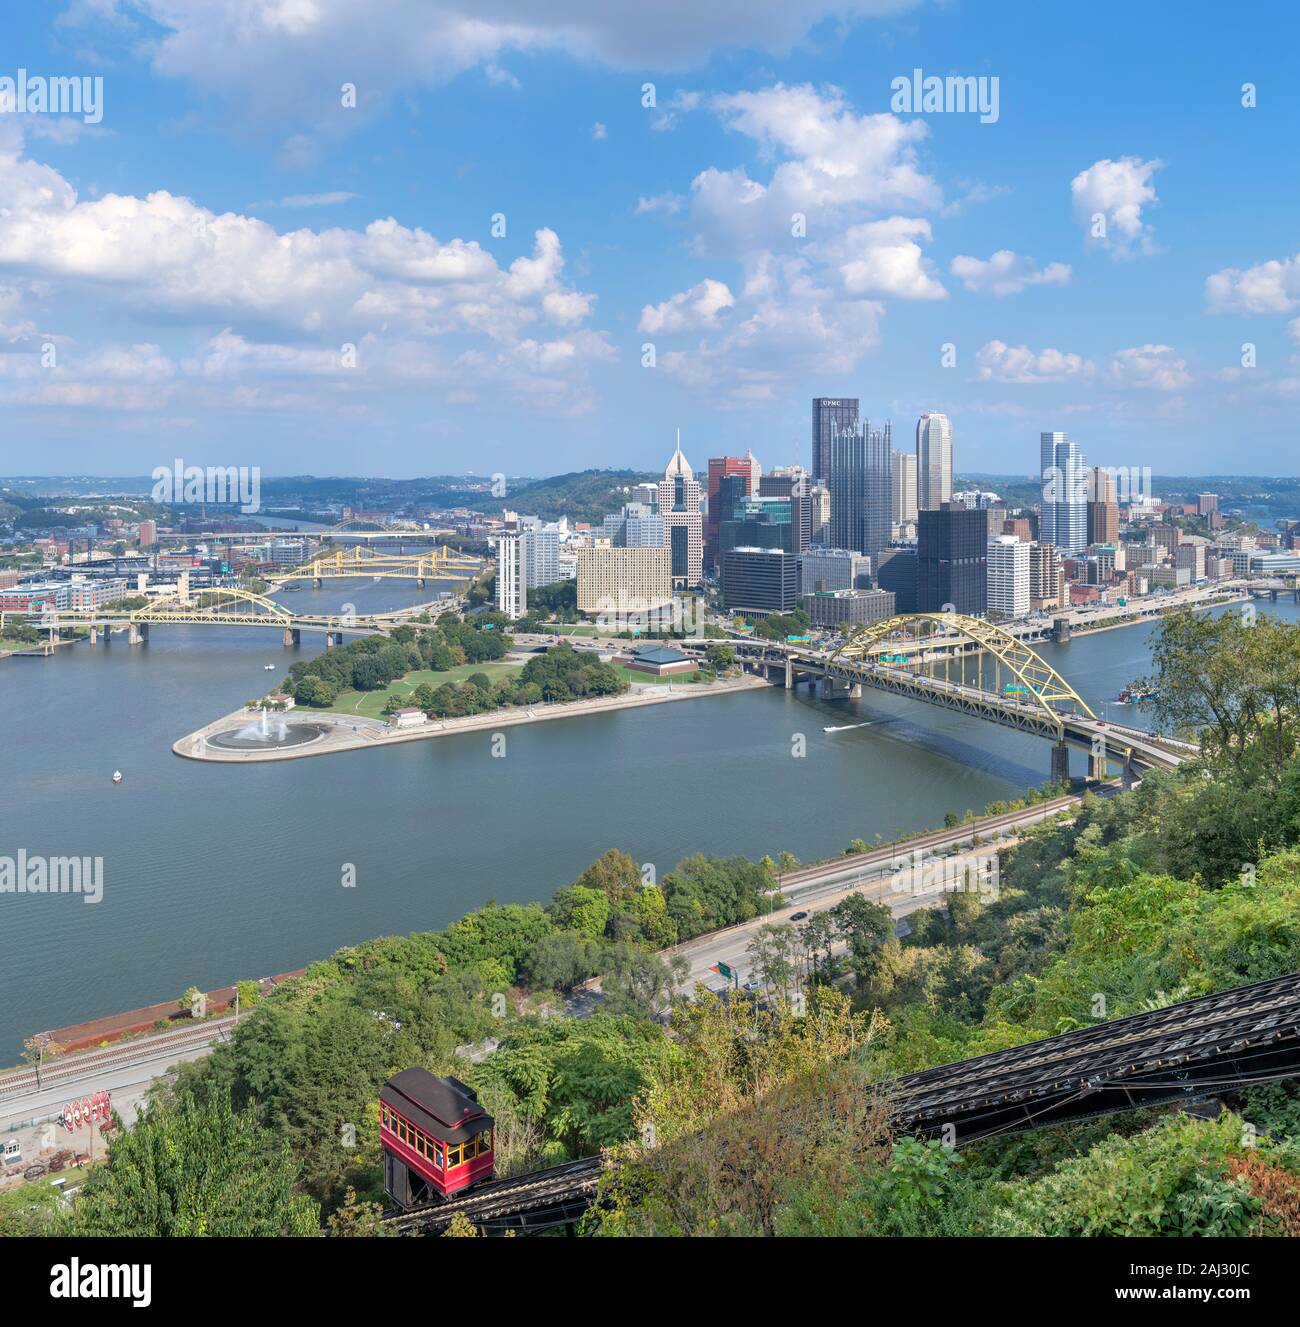 Blick auf die Skyline der Innenstadt von der Oberseite der Duquesne Incline Standseilbahn, Pittsburgh, Pennsylvania, USA Stockfoto